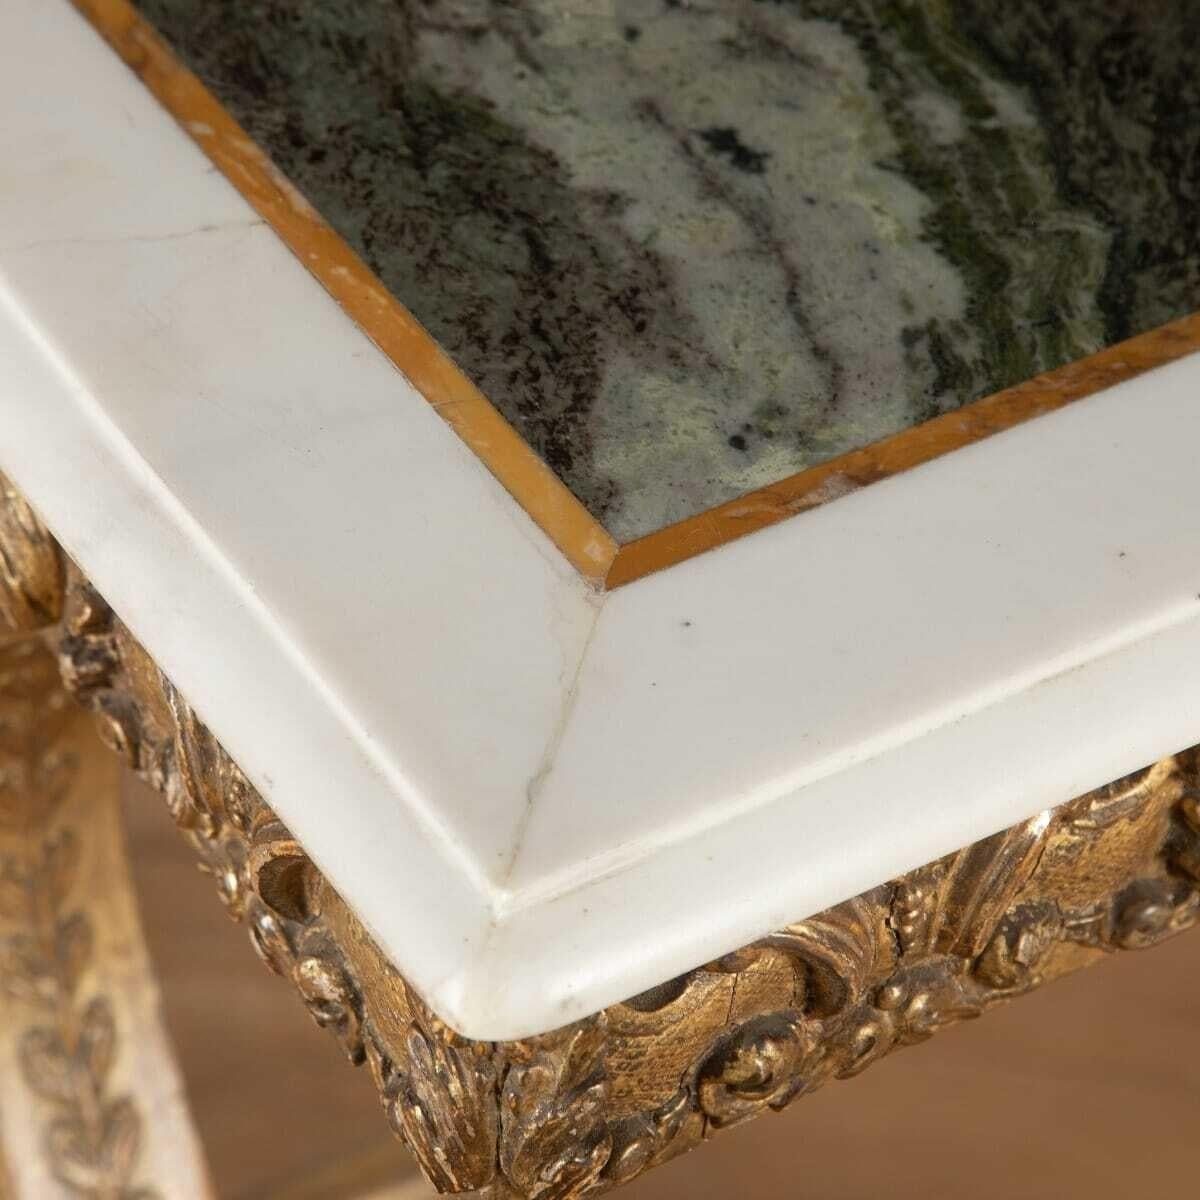 Prächtiger vergoldeter und komponierter Irish Regency-Mitteltisch. Circa 1820. 
Dieser Tisch weist eine wunderschöne vergoldete Gesso-Verzierung auf, wie sie im frühen 19. Jahrhundert sehr beliebt war. Der Sockel besteht aus attraktiven, rollenden